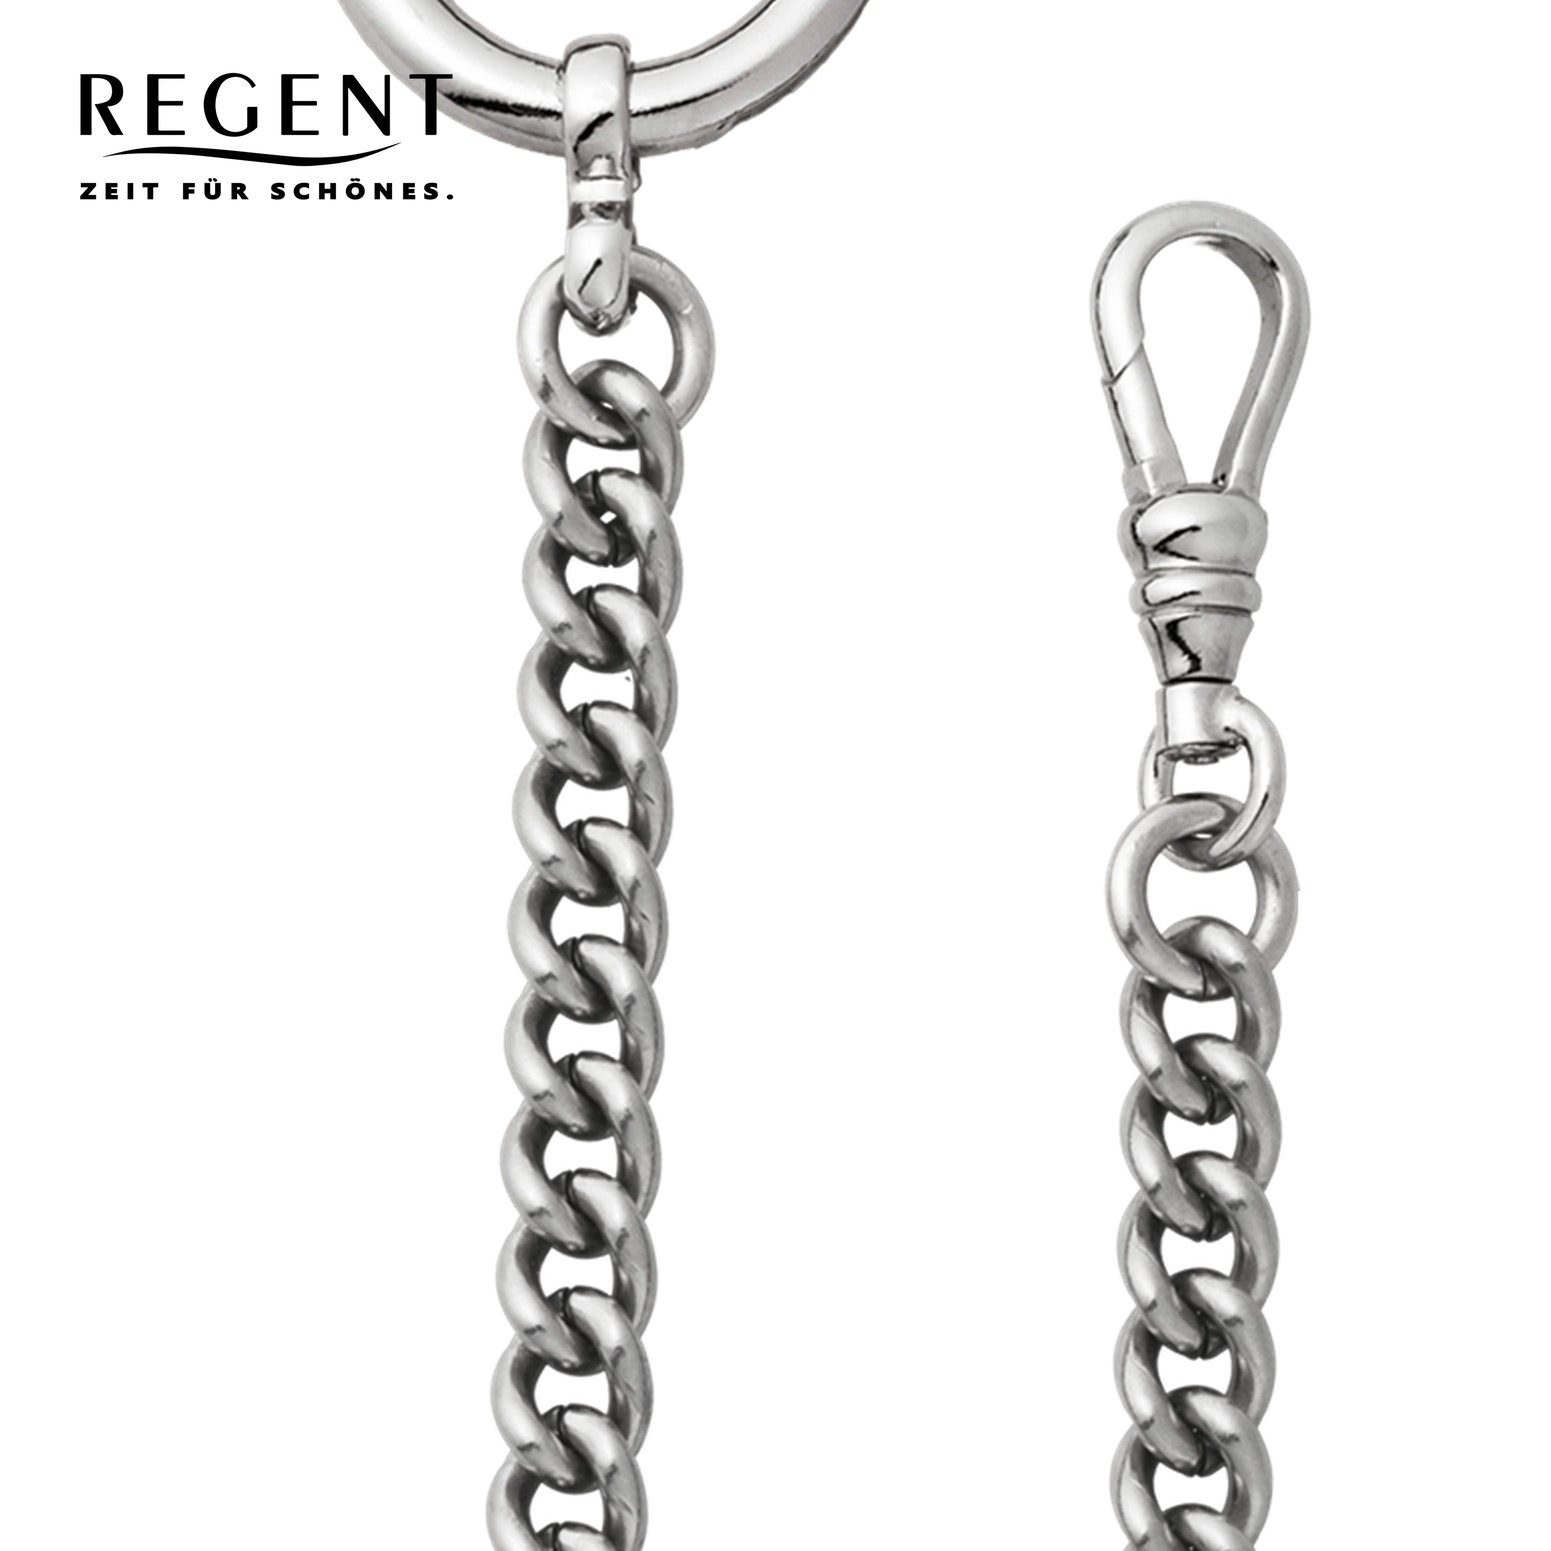 Taschenuhren-Kette Regent Taschenuhrenkette, Regent 5mm P-50, Kettenuhr Herren Elegant